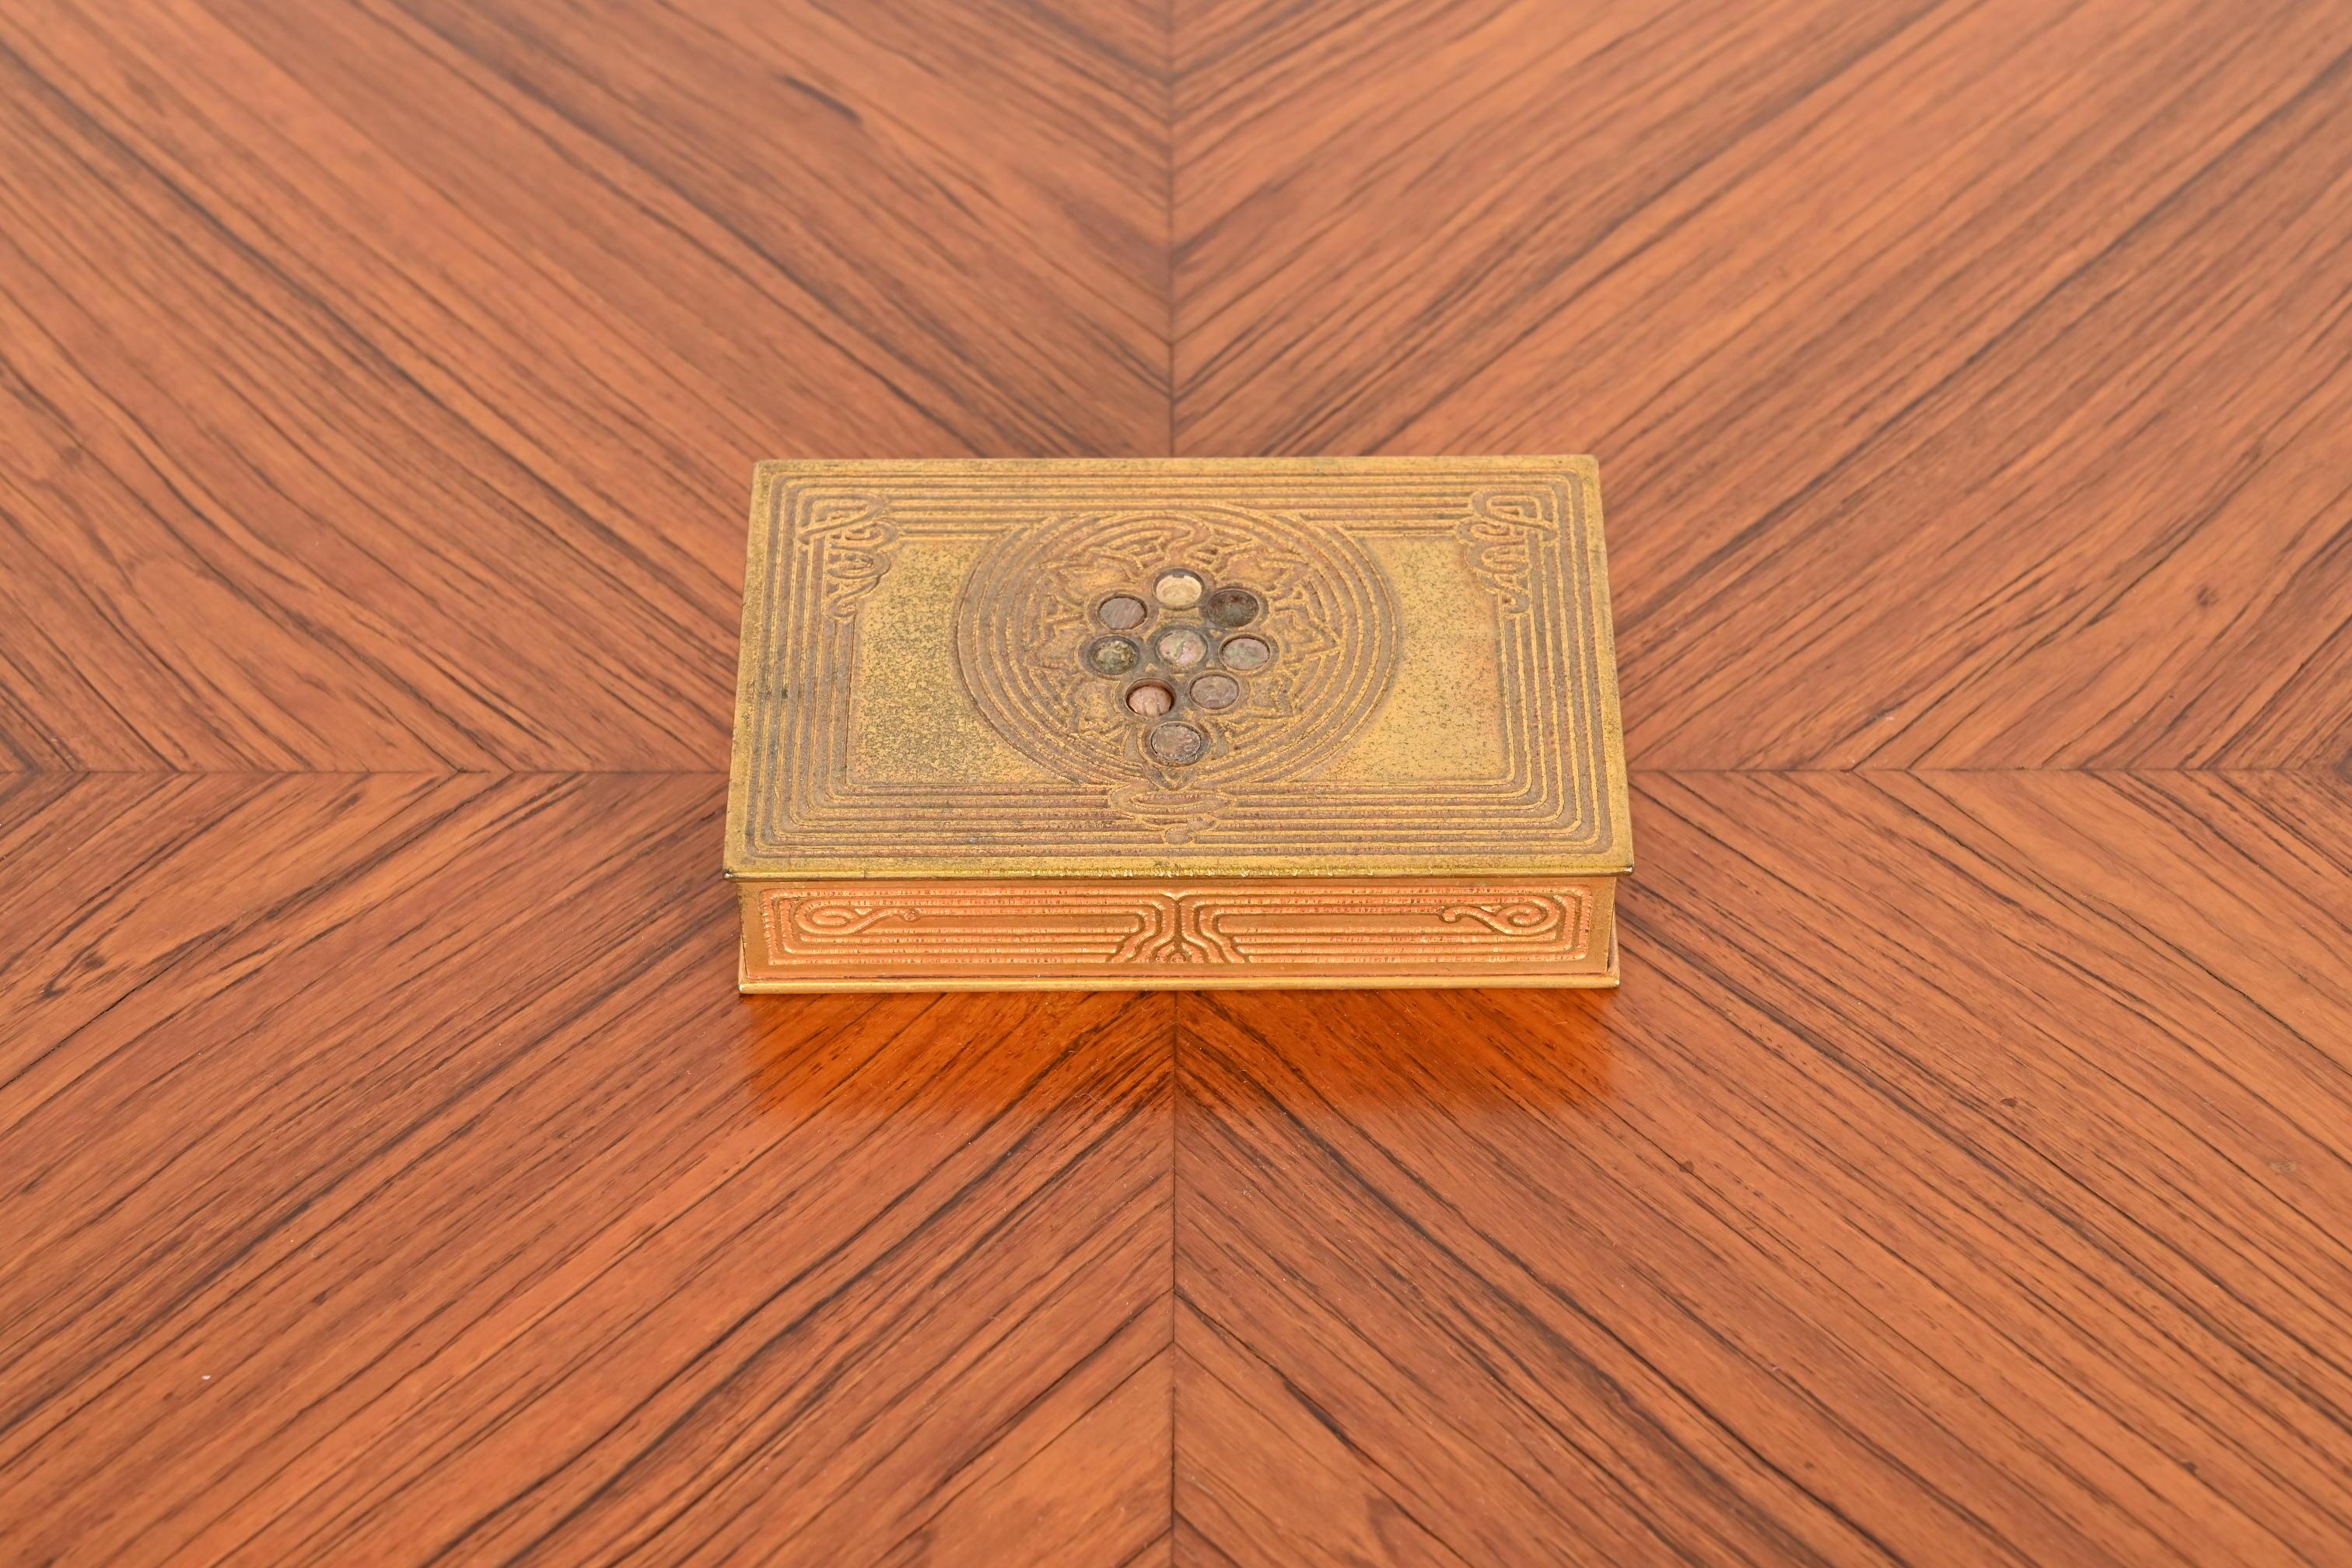 Eine prächtige Art Deco Periode Bronze doré und eingelegten Abalone Zigarettenschachtel, Schreibtisch-Box, oder Schmuckkästchen

Von Tiffany Studios

New York, USA, Anfang des 20. Jahrhunderts

Maße: 5,5 